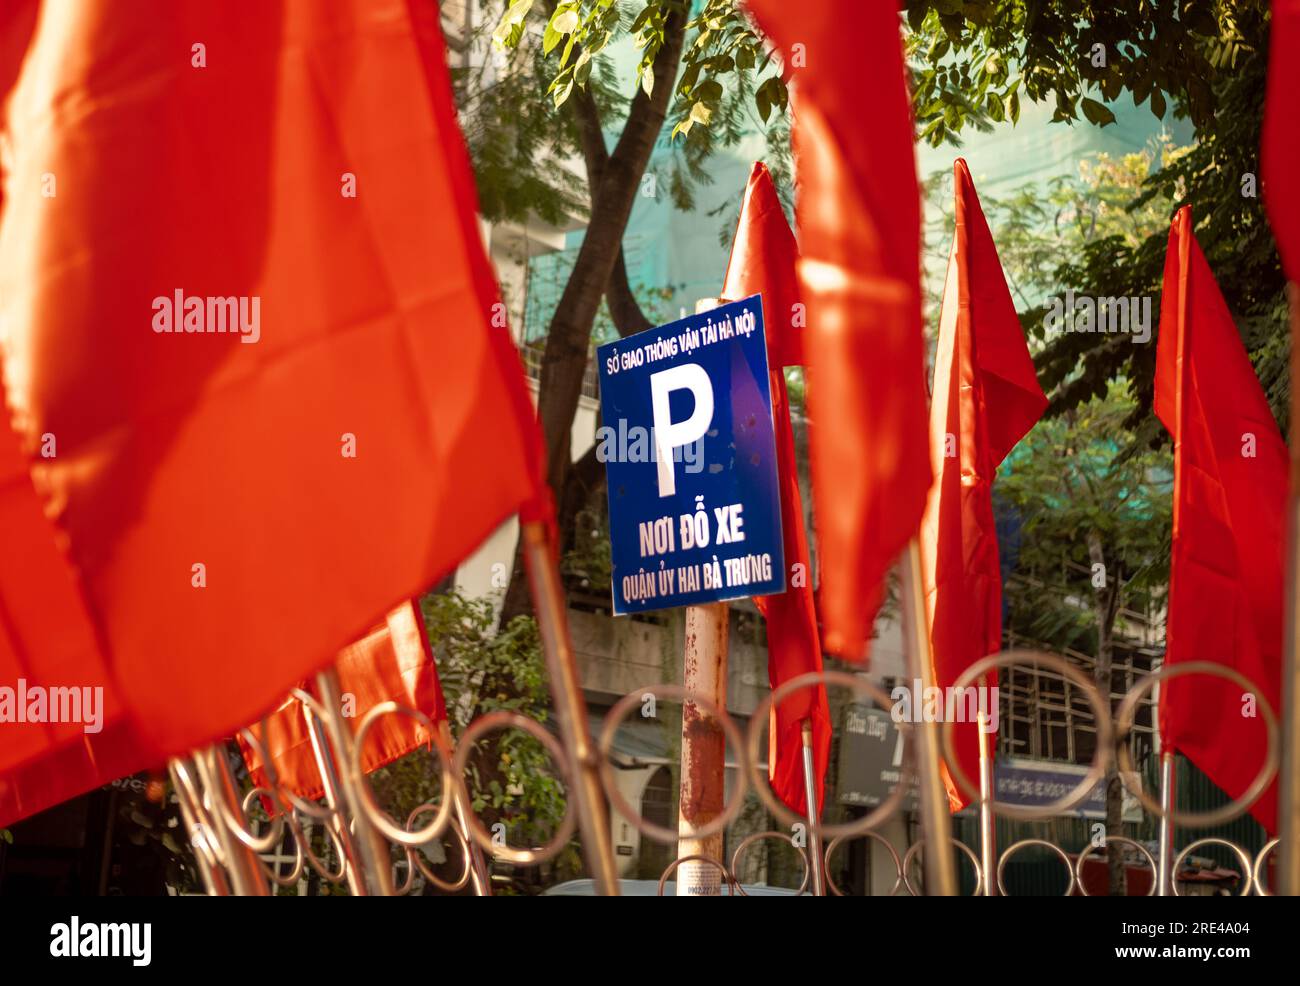 Kommunistische rote Flaggen, die ein blaues Schild mit dem Buchstaben „P“ umgeben, um auf einen offiziellen Parkplatz in einer Straße in Hanoi, Vietnam, hinzuweisen. Stockfoto